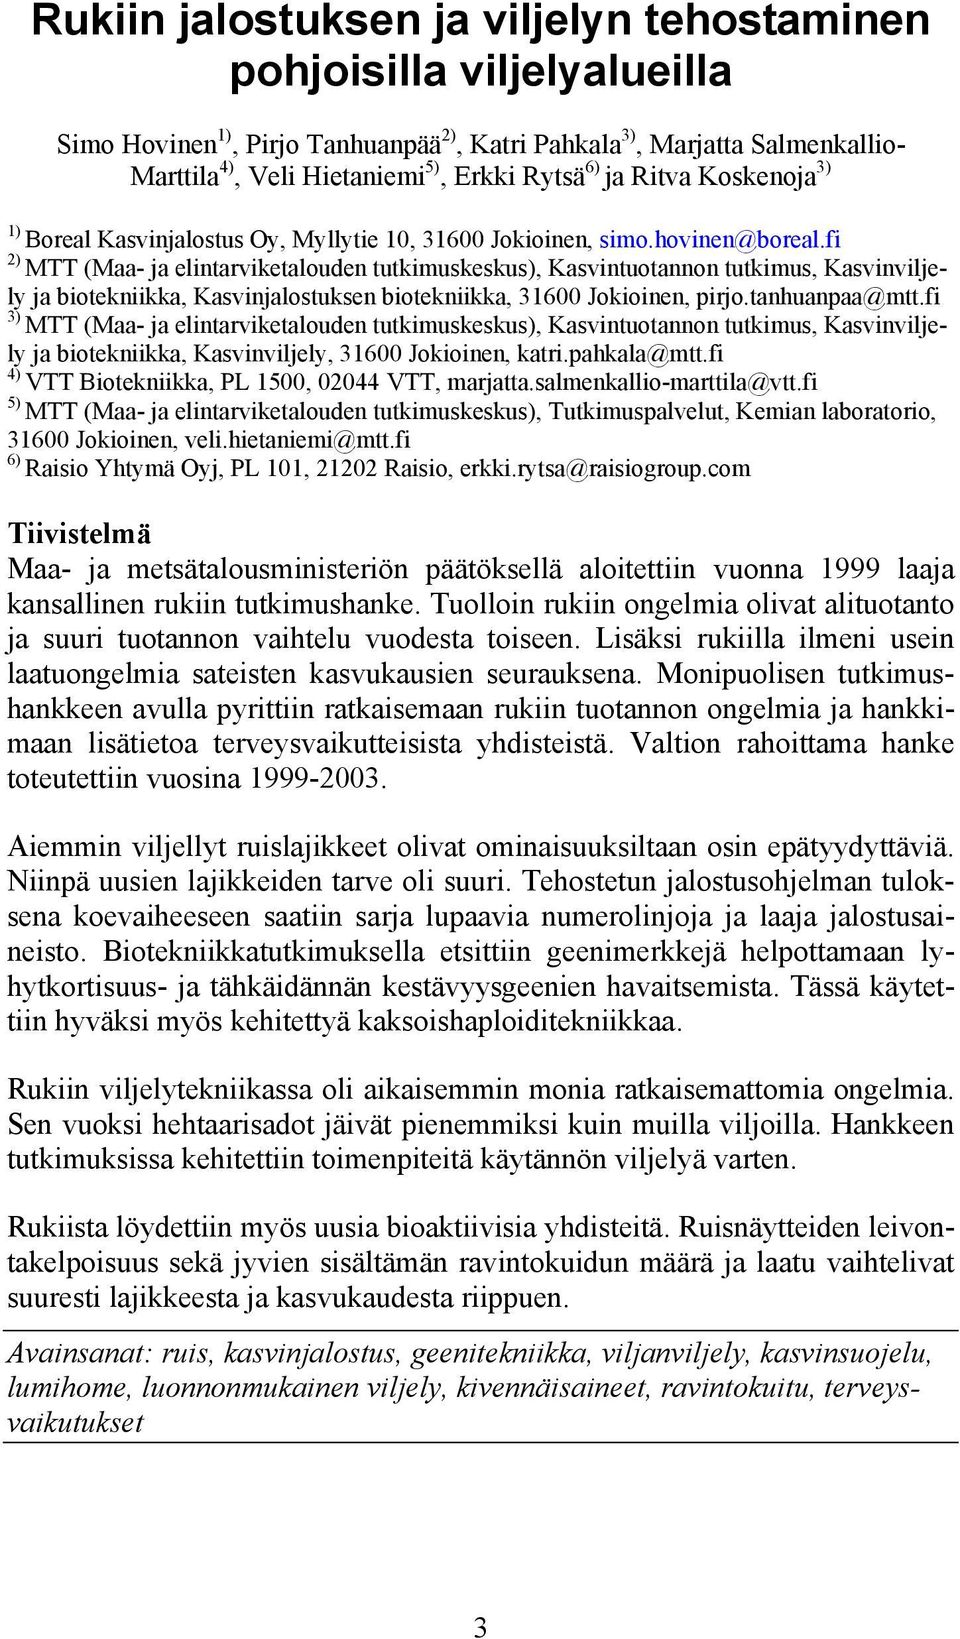 fi 2) MTT (Maa- ja elintarviketalouden tutkimuskeskus), Kasvintuotannon tutkimus, Kasvinviljely ja biotekniikka, Kasvinjalostuksen biotekniikka, 31600 Jokioinen, pirjo.tanhuanpaa@mtt.